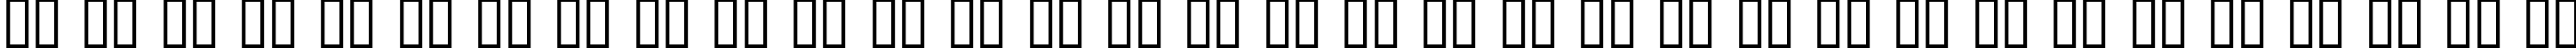 Пример написания русского алфавита шрифтом Blackletter ExtraBold